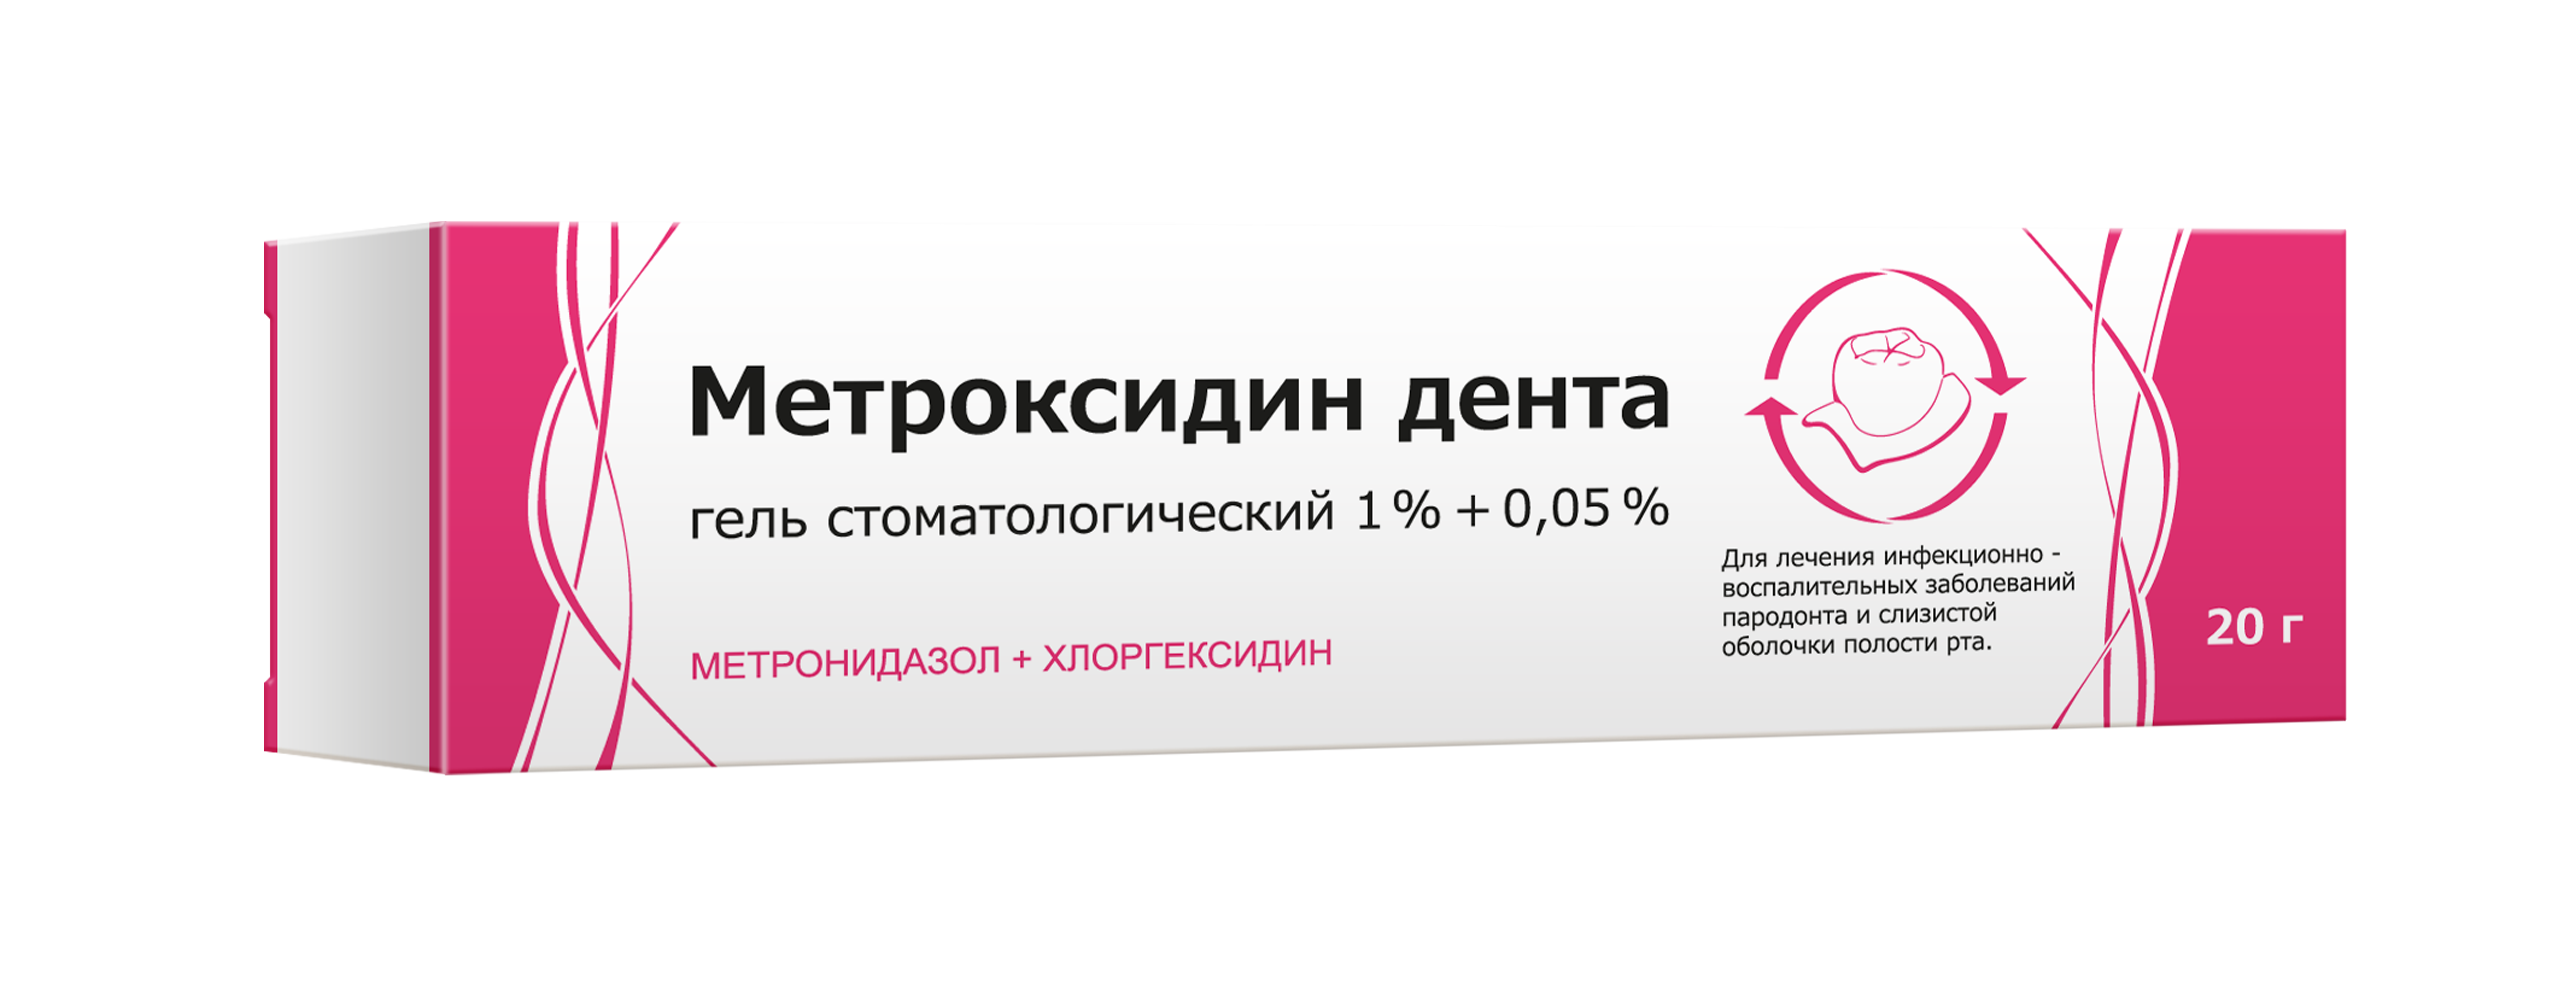 Метроксидин дента, гель - ООО «Тульская фармацевтическая фабрика»